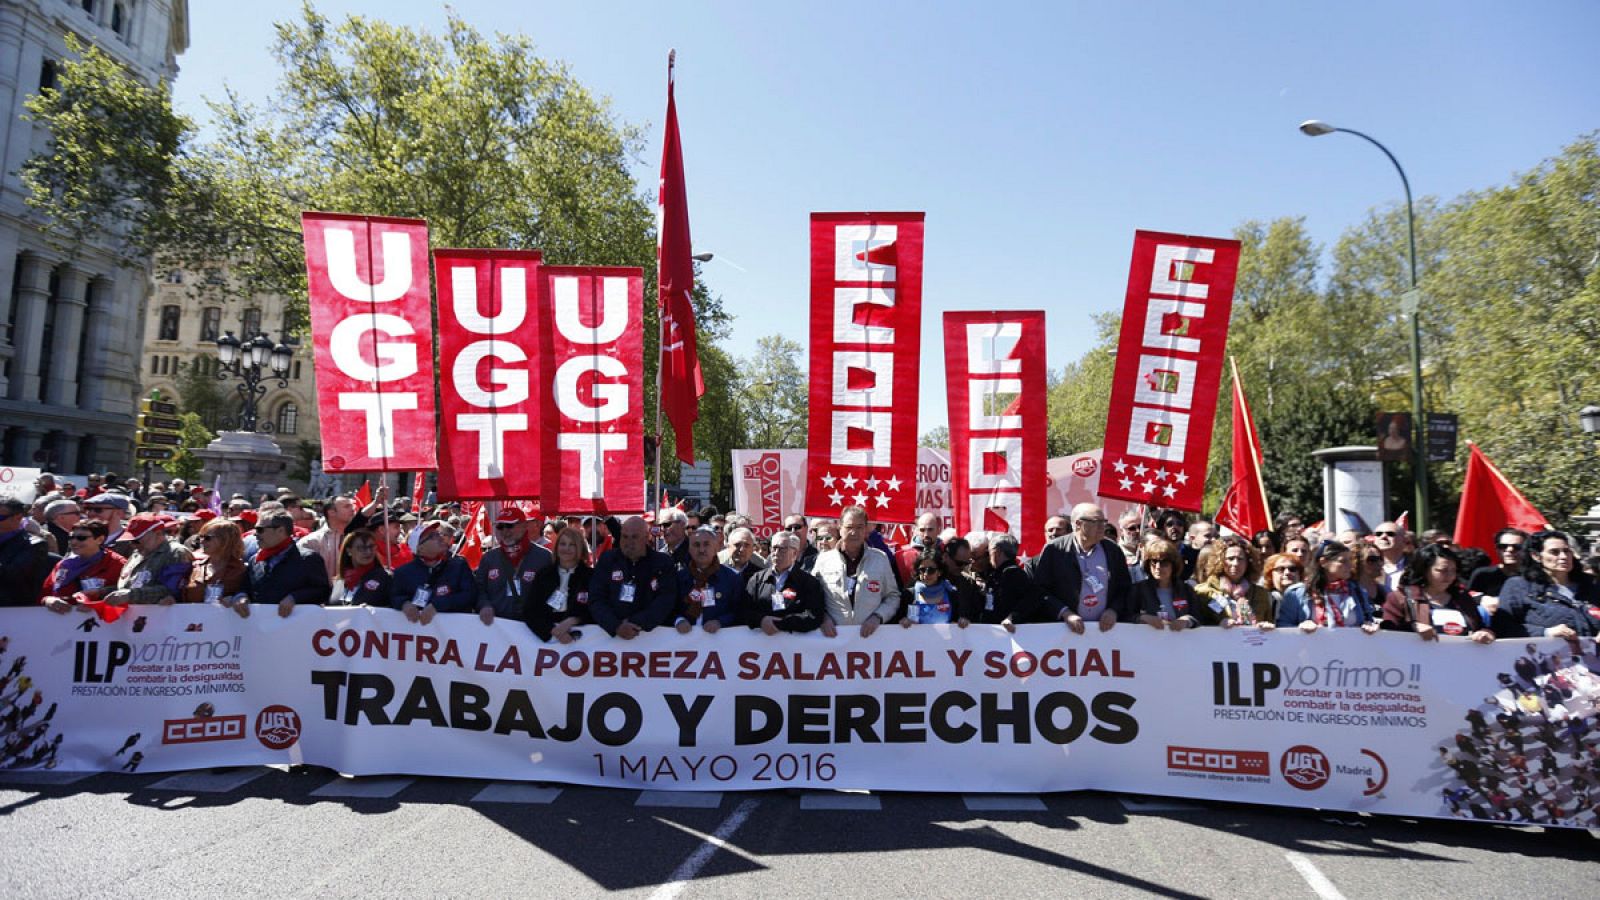 Los secretarios generales de CCOO y UGT Ignacio Fernández Toxo y Pepe Álvarez encabezan la manifestación central con motivo del Primero de Mayo